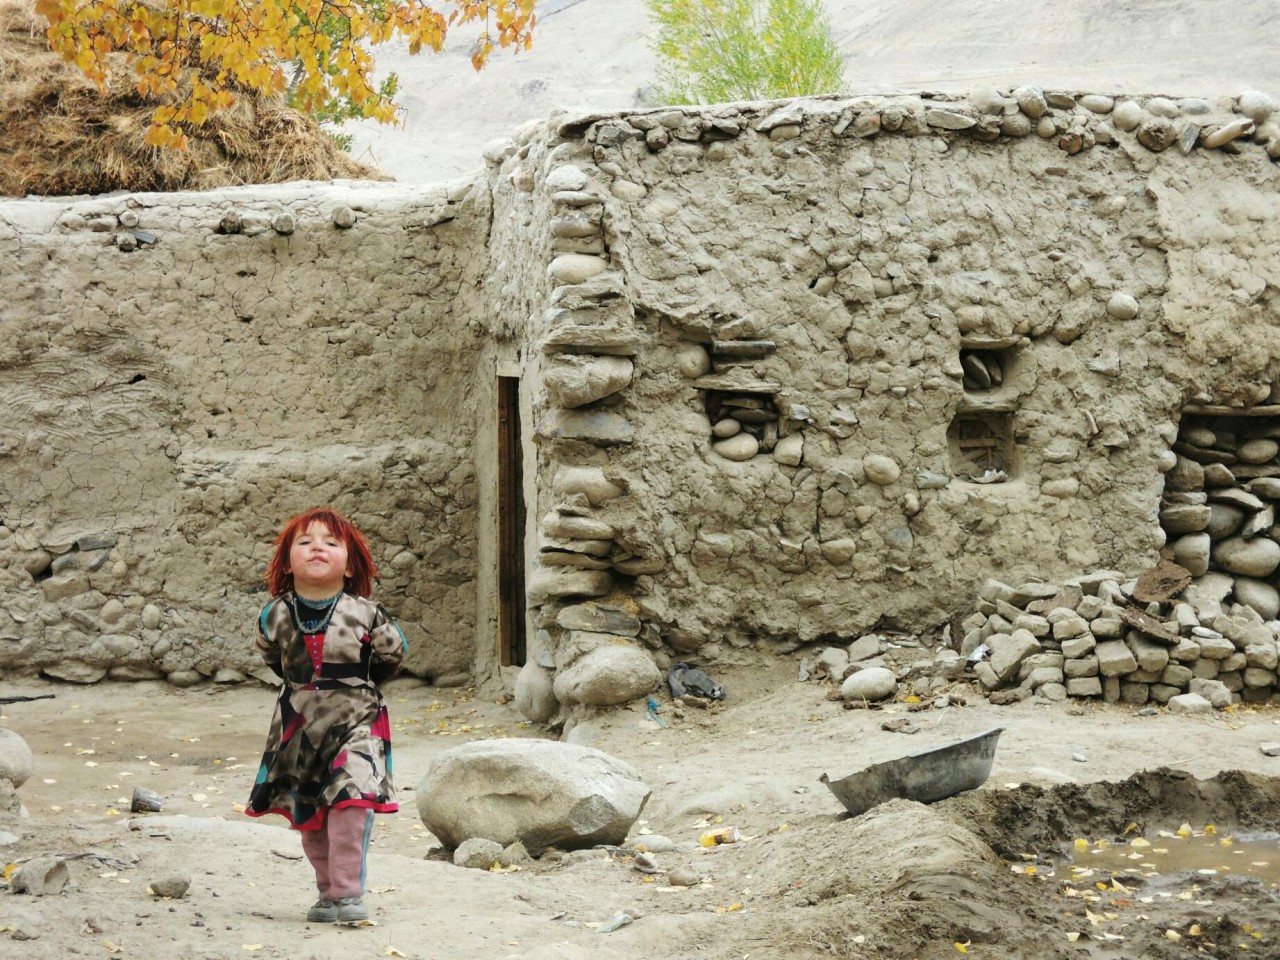 Kid in Afghanistan